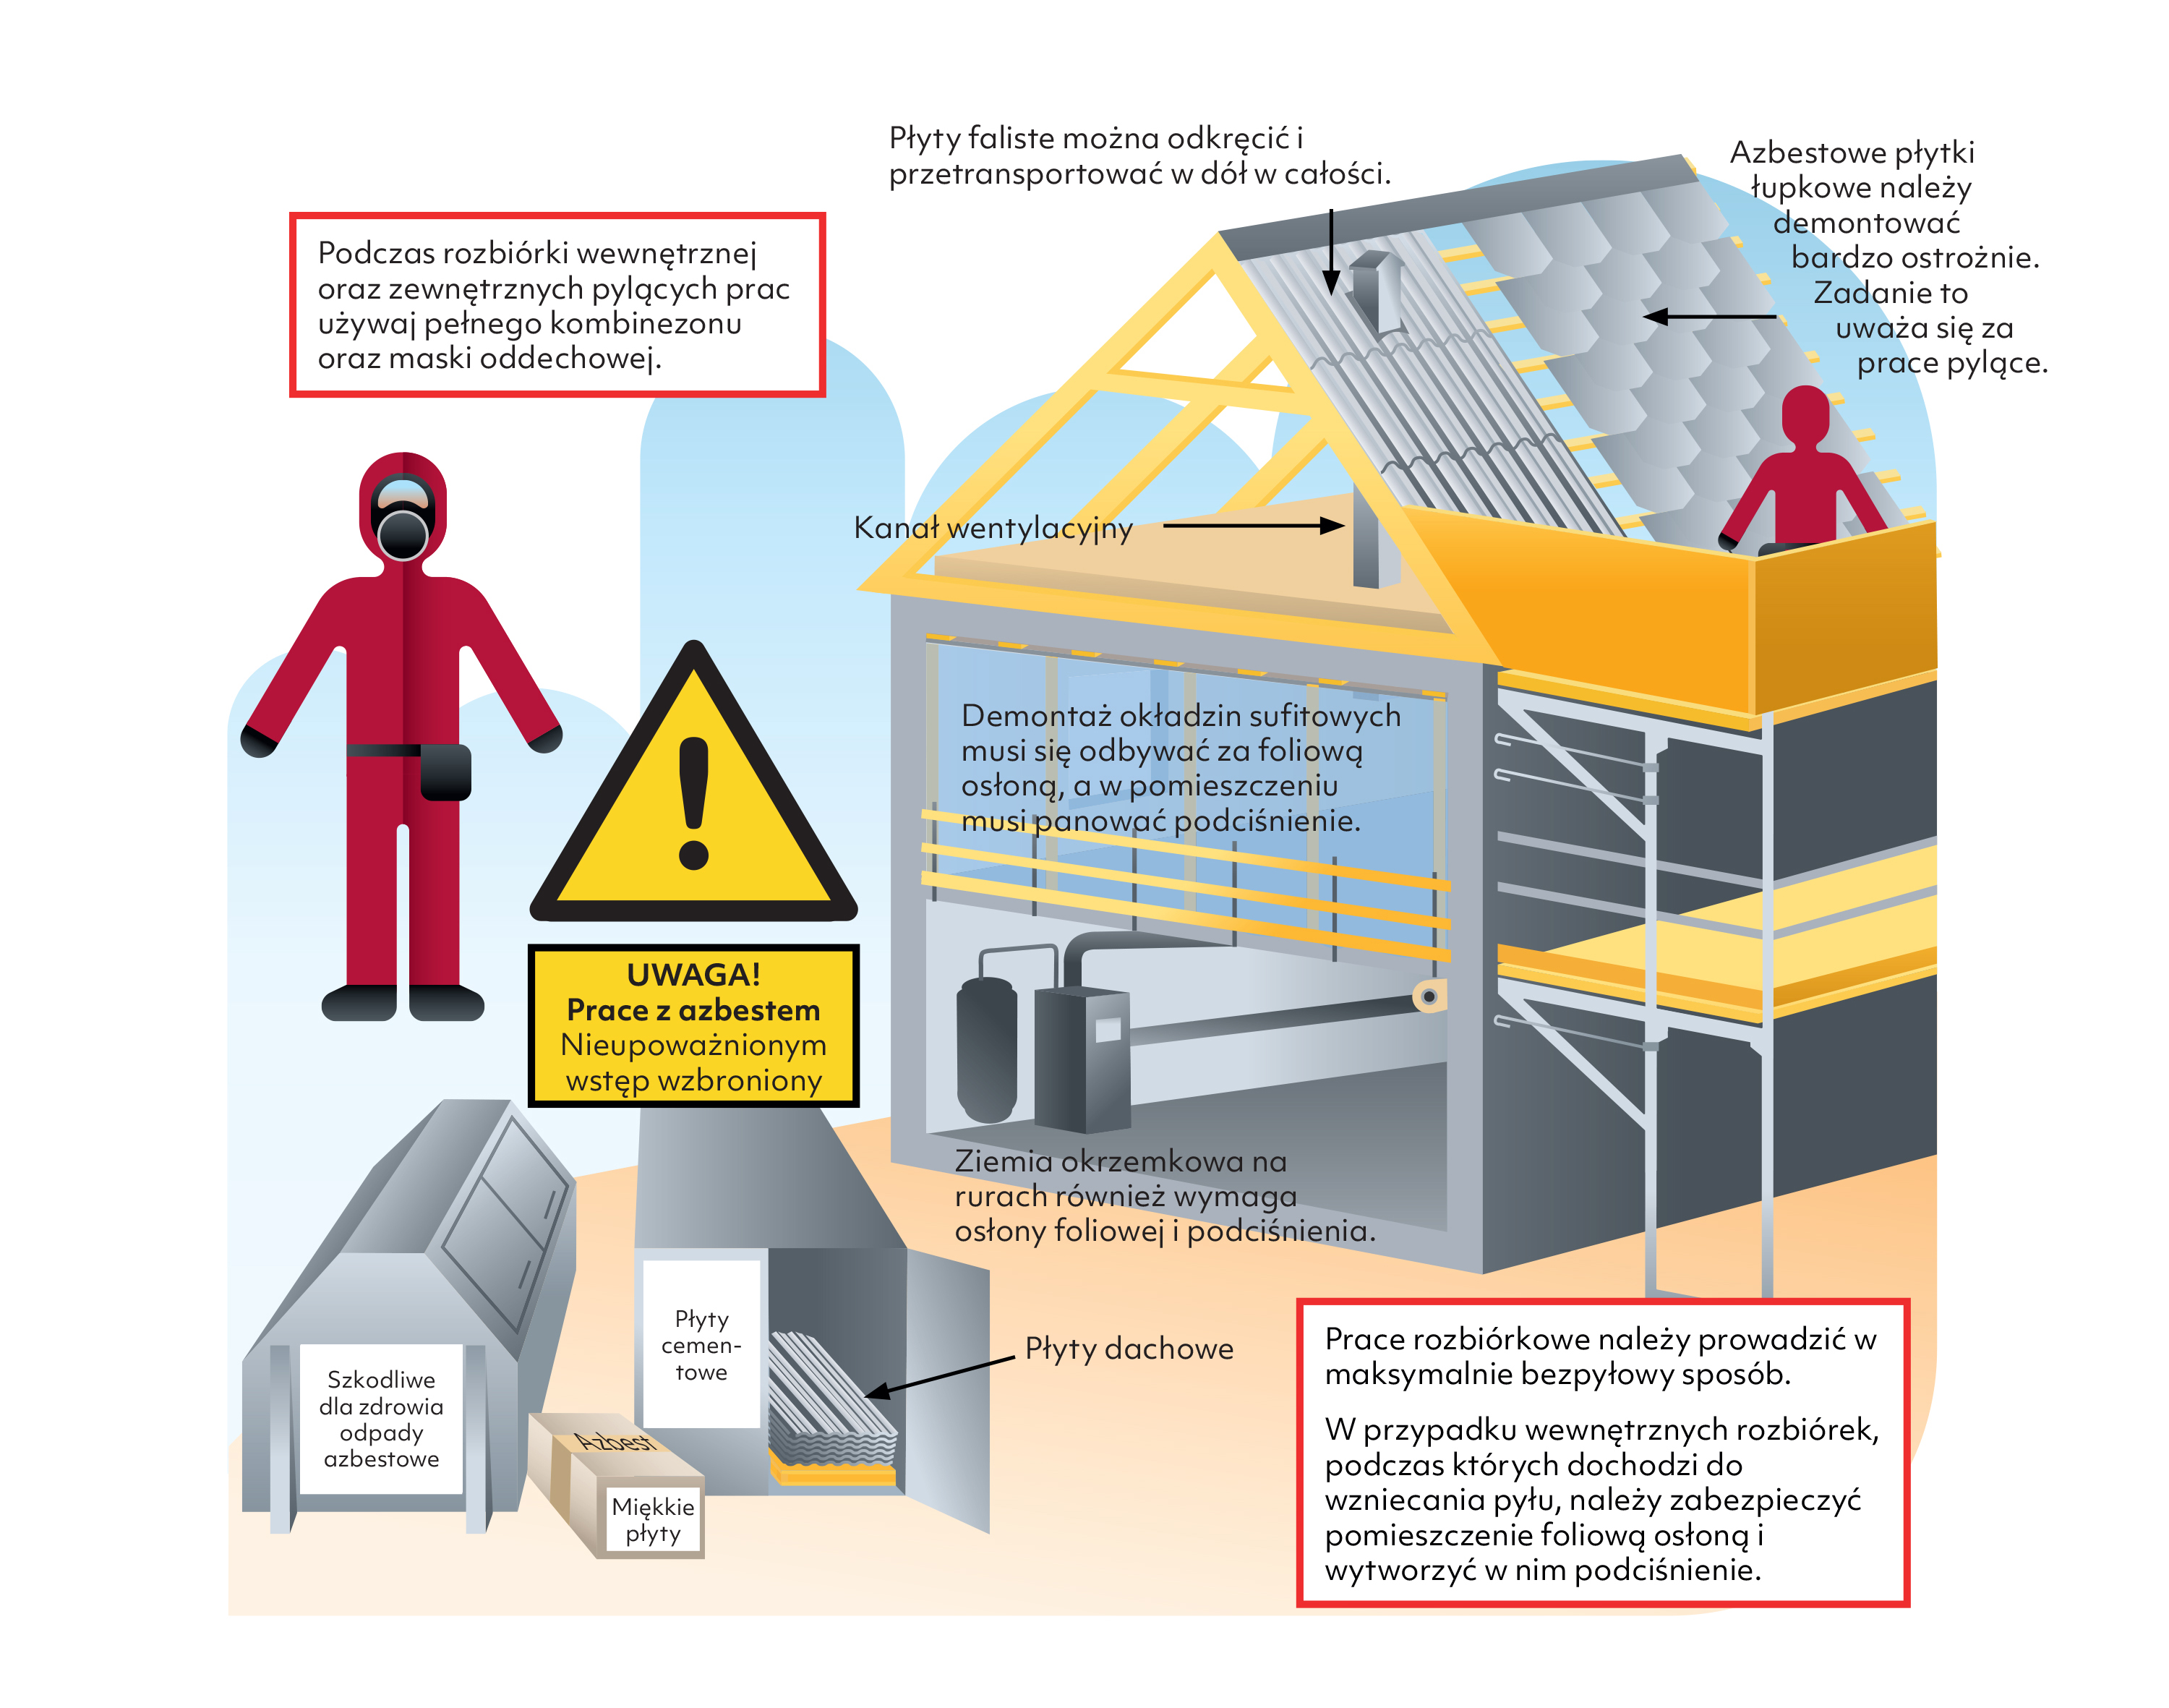 Ilustracja pokazuje sposób bezpiecznej pracy z azbestem